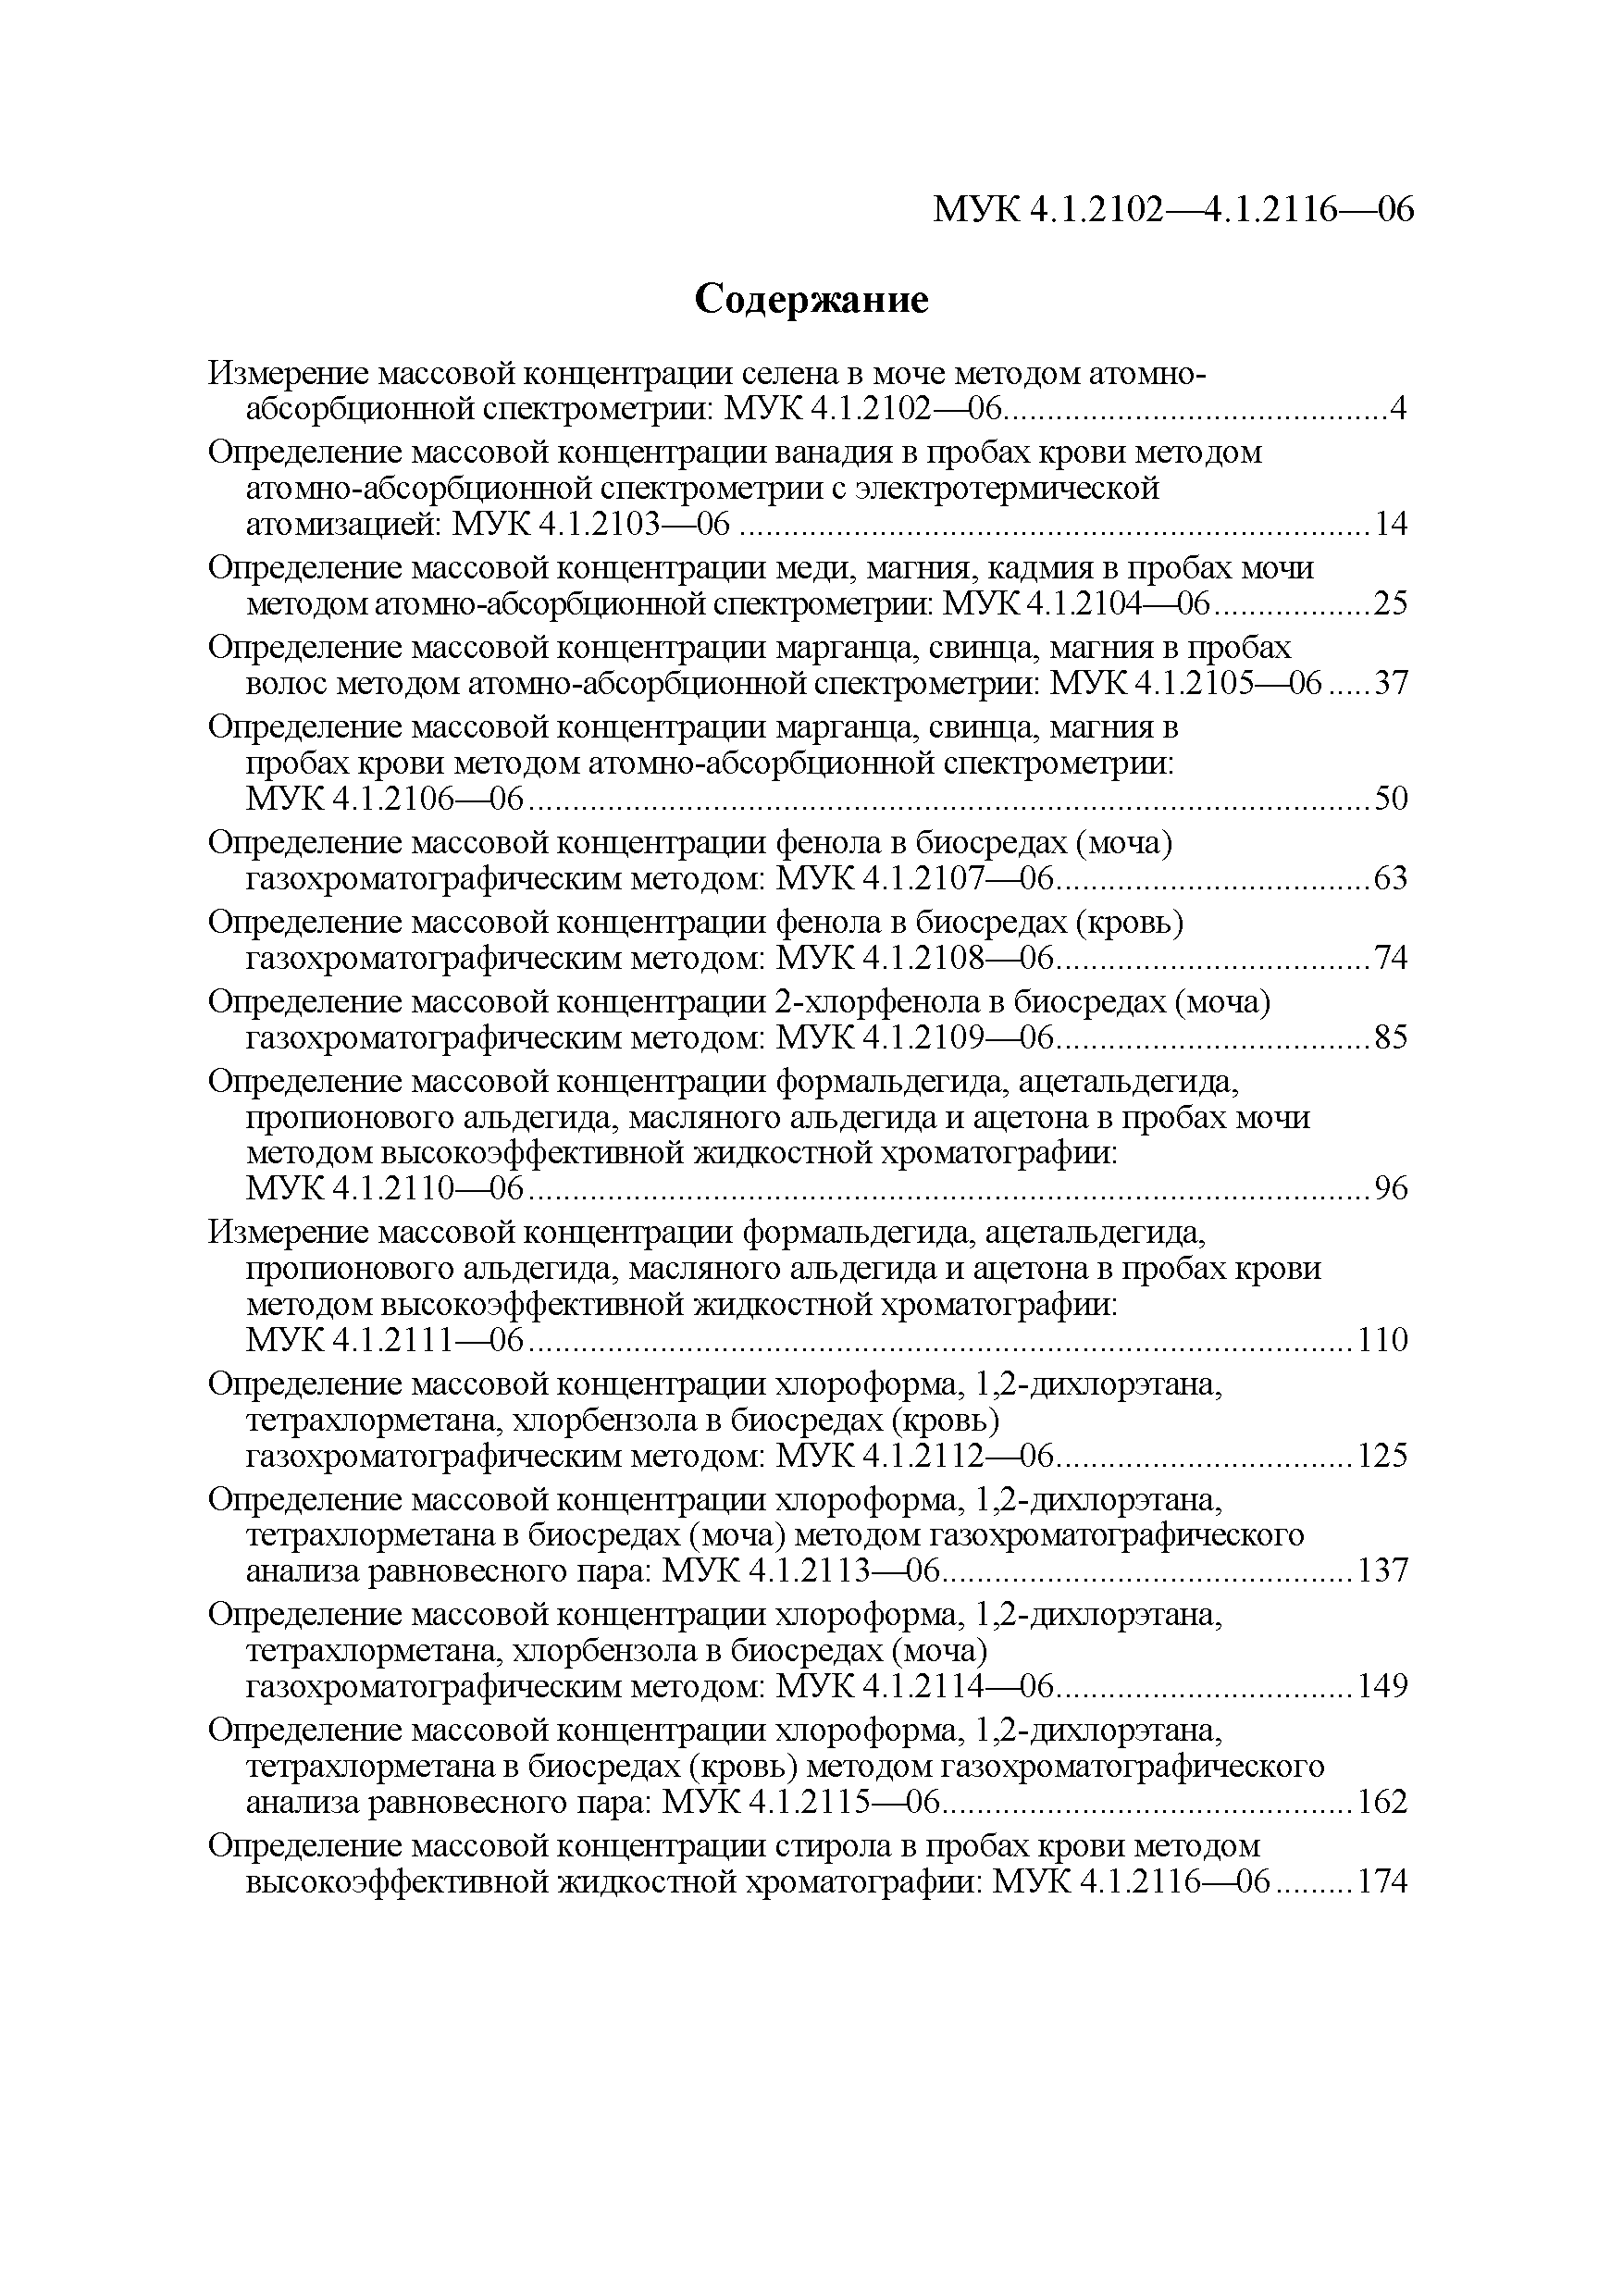 МУК 4.1.2113-06